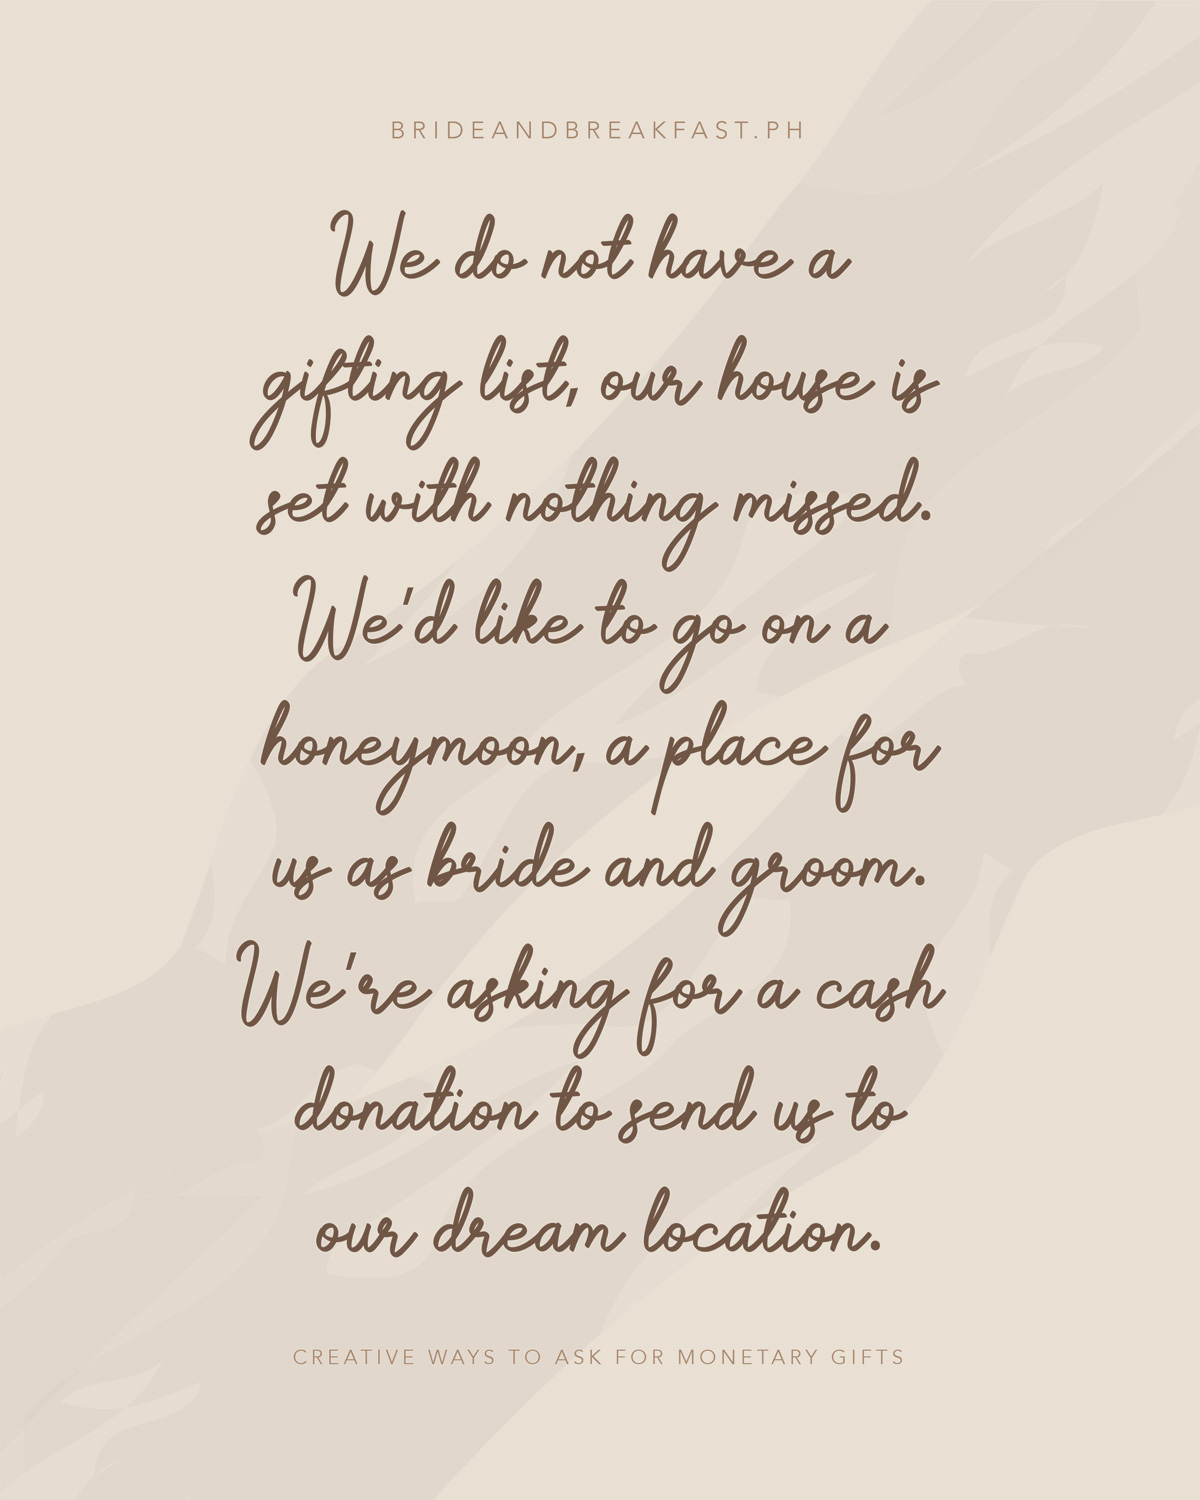 私たちは贈り物のリストを持っていない、私たちの家は逃したものは何も設定されています。 私たちは新婚旅行に新郎新婦として私たちのための場所に行きたいと思います。 私たちは私たちの夢の場所に私たちを送るために現金の寄付を求めています。